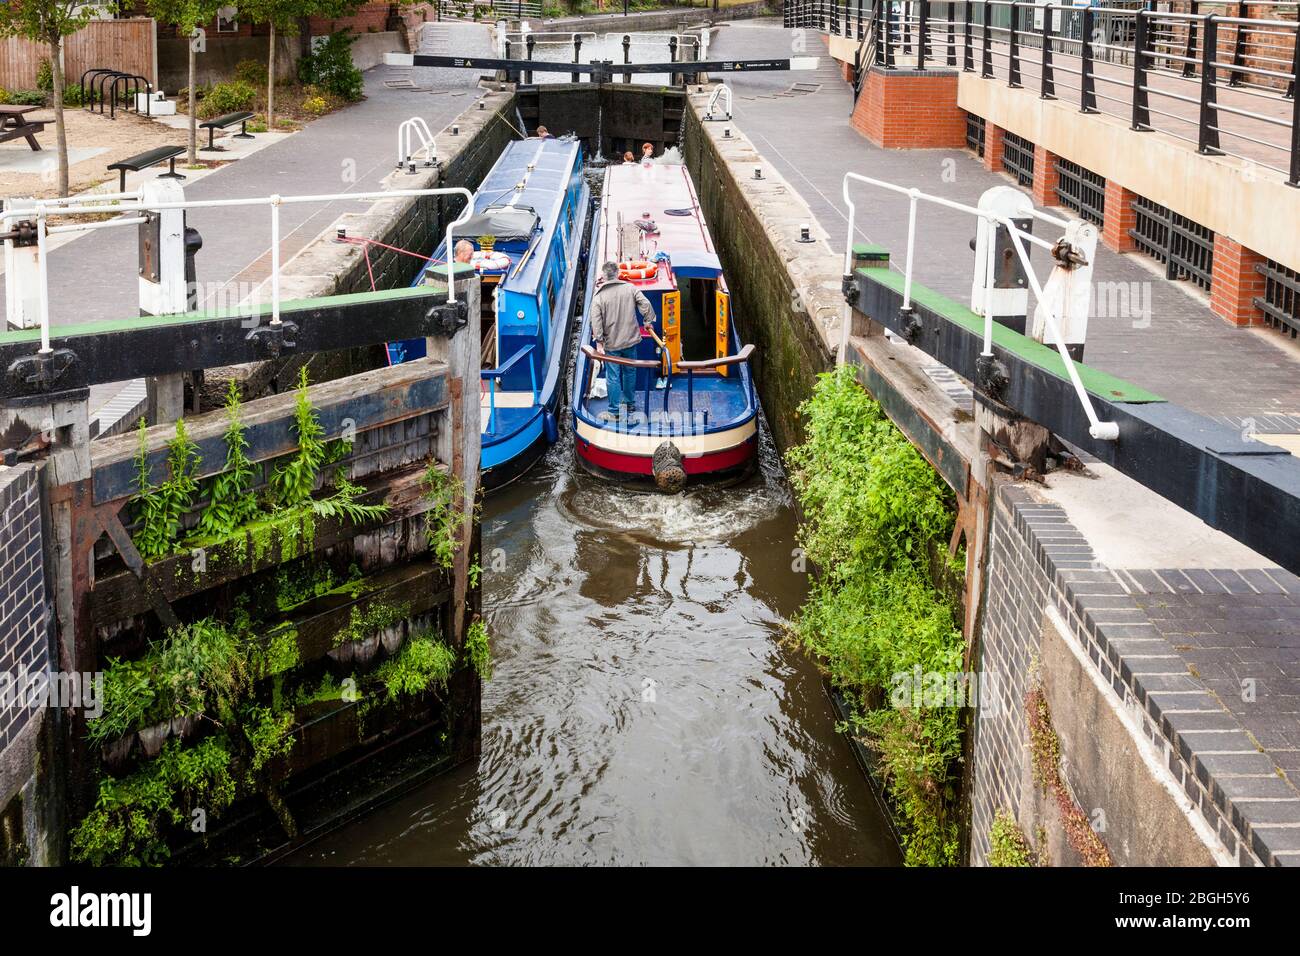 Deux bateaux de étroite traversant Meadow Lane Lock sur le canal de Nottingham Beeston, Nottingham, Angleterre, Royaume-Uni Banque D'Images